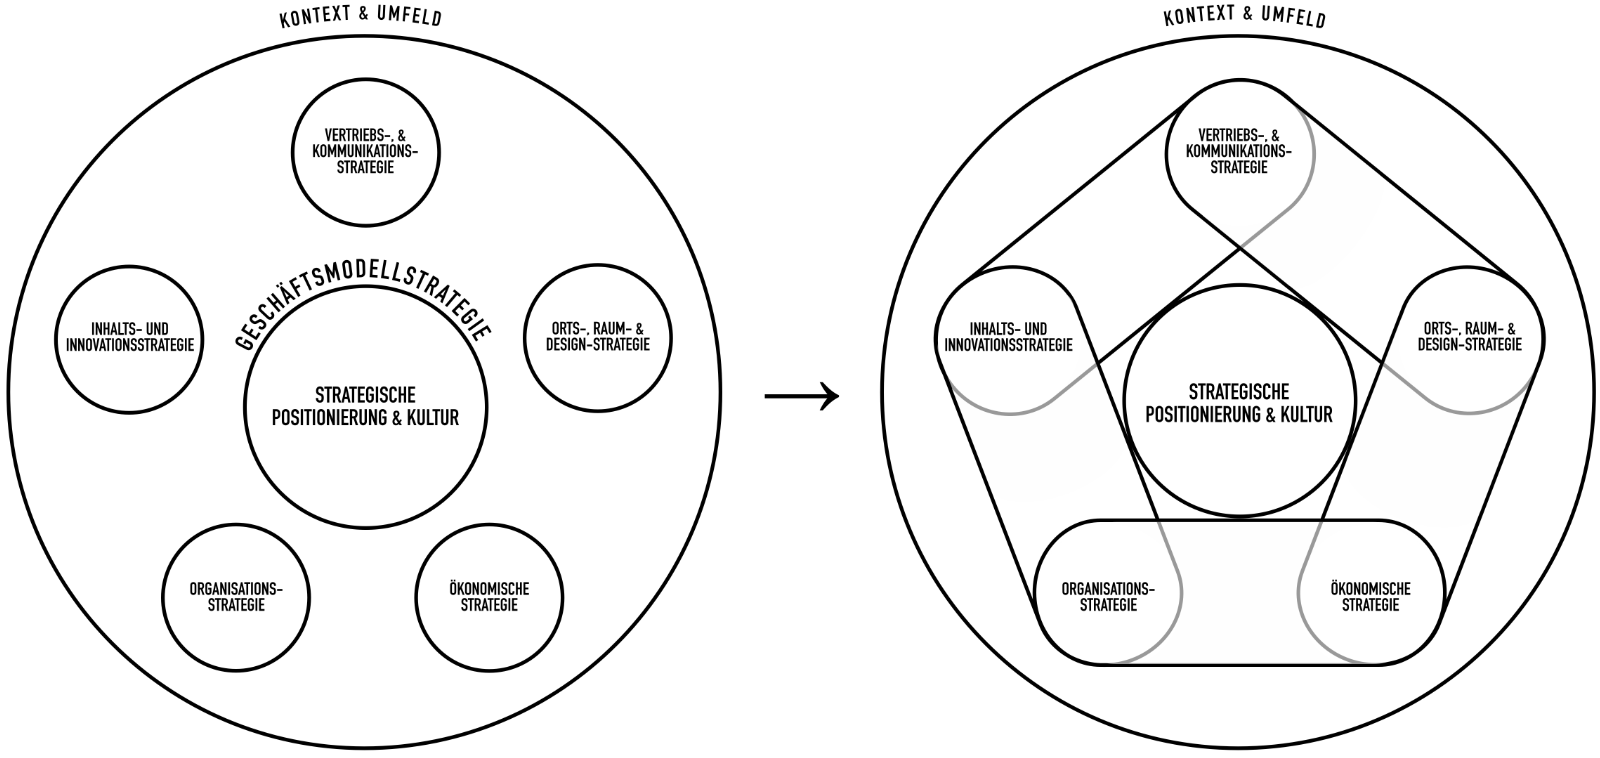 Strategische Fokusfelder - Das schematische Modell